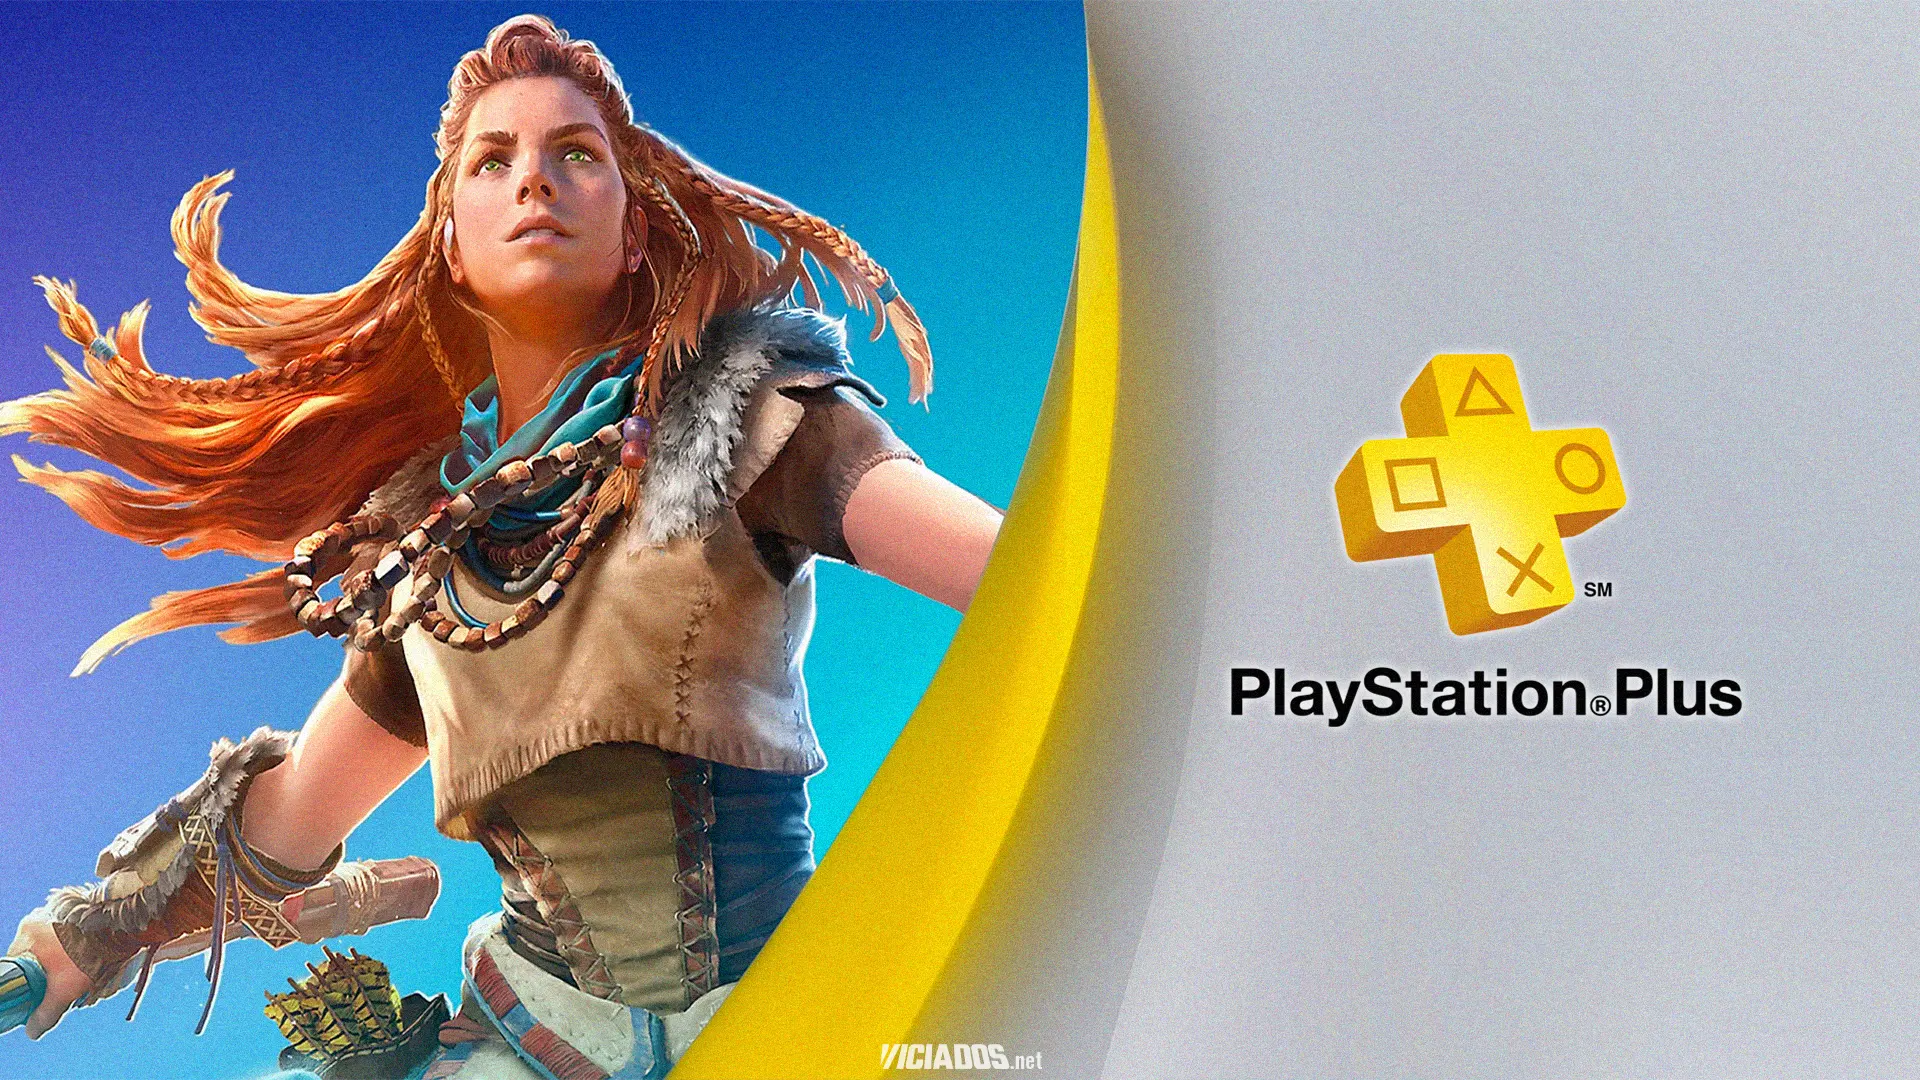 Jogos grátis da PS Plus de julho para PS4 e PS5 vazam antes do anúncio oficial 2023 Viciados